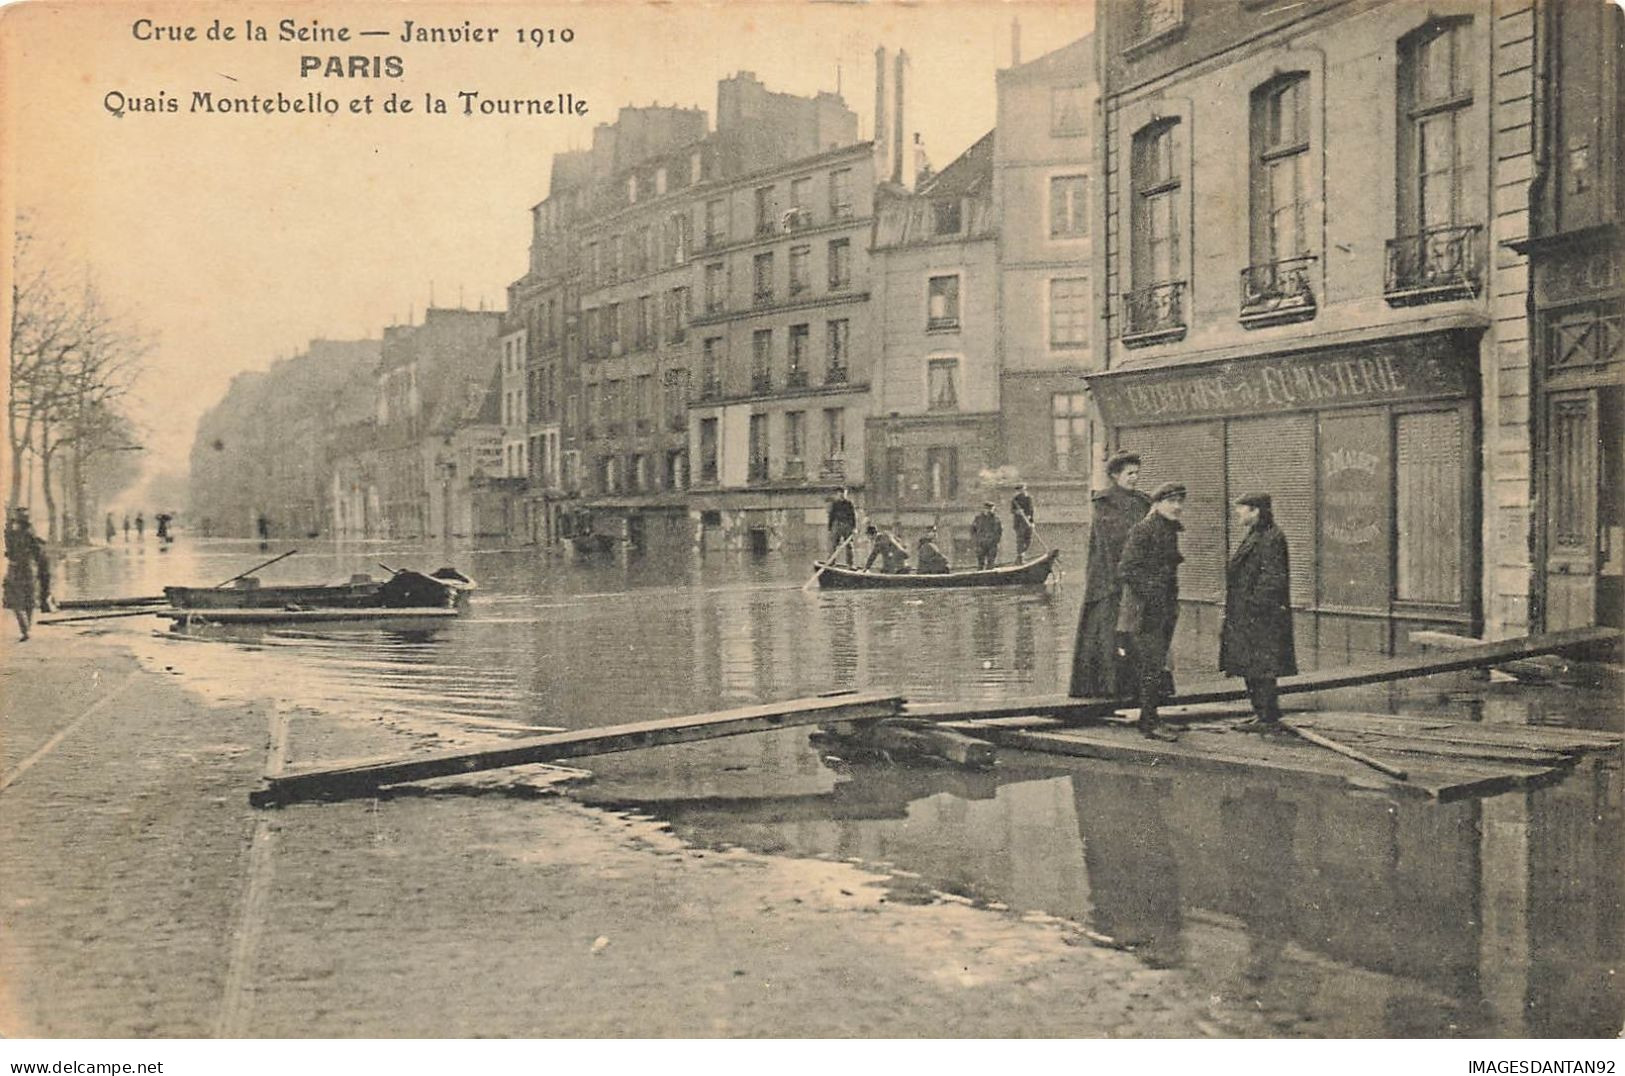 75 PARIS #22791 CRUE DE LA SEINE INONDATIONS 1910 QUAIS MONTEBELLO ET LA TOURNELLE BARQUE CANOT - Paris Flood, 1910